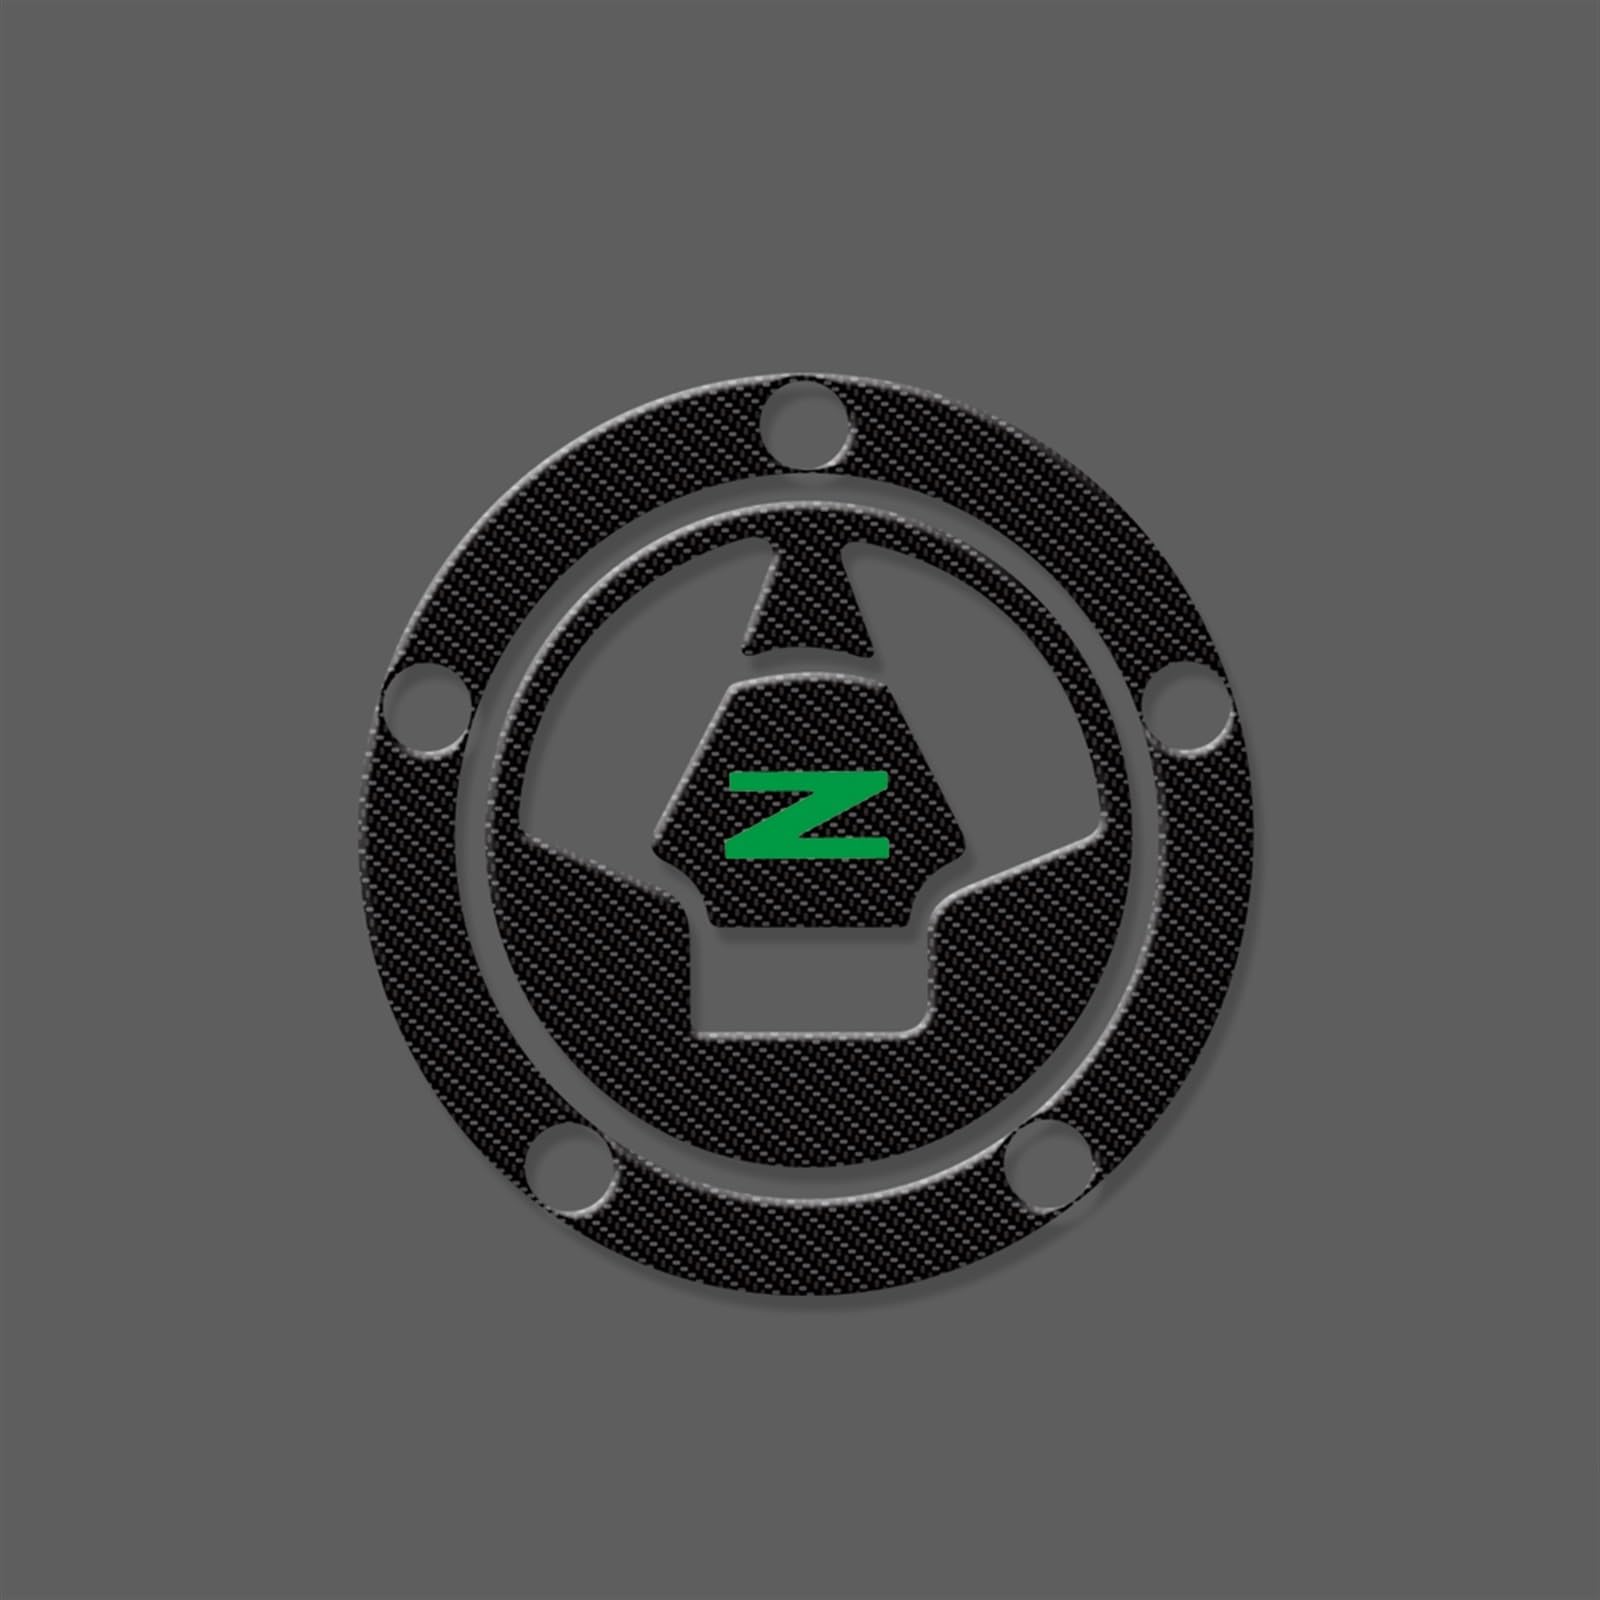 ZXYIWSDF Motorrad Tank Aufkleber Fit Für Kawasaki Für Z750 Z800 Z1000 Z1000sx Motorrad Tank Pad Schutz Aufkleber Aufkleber(AAA2) von ZXYIWSDF